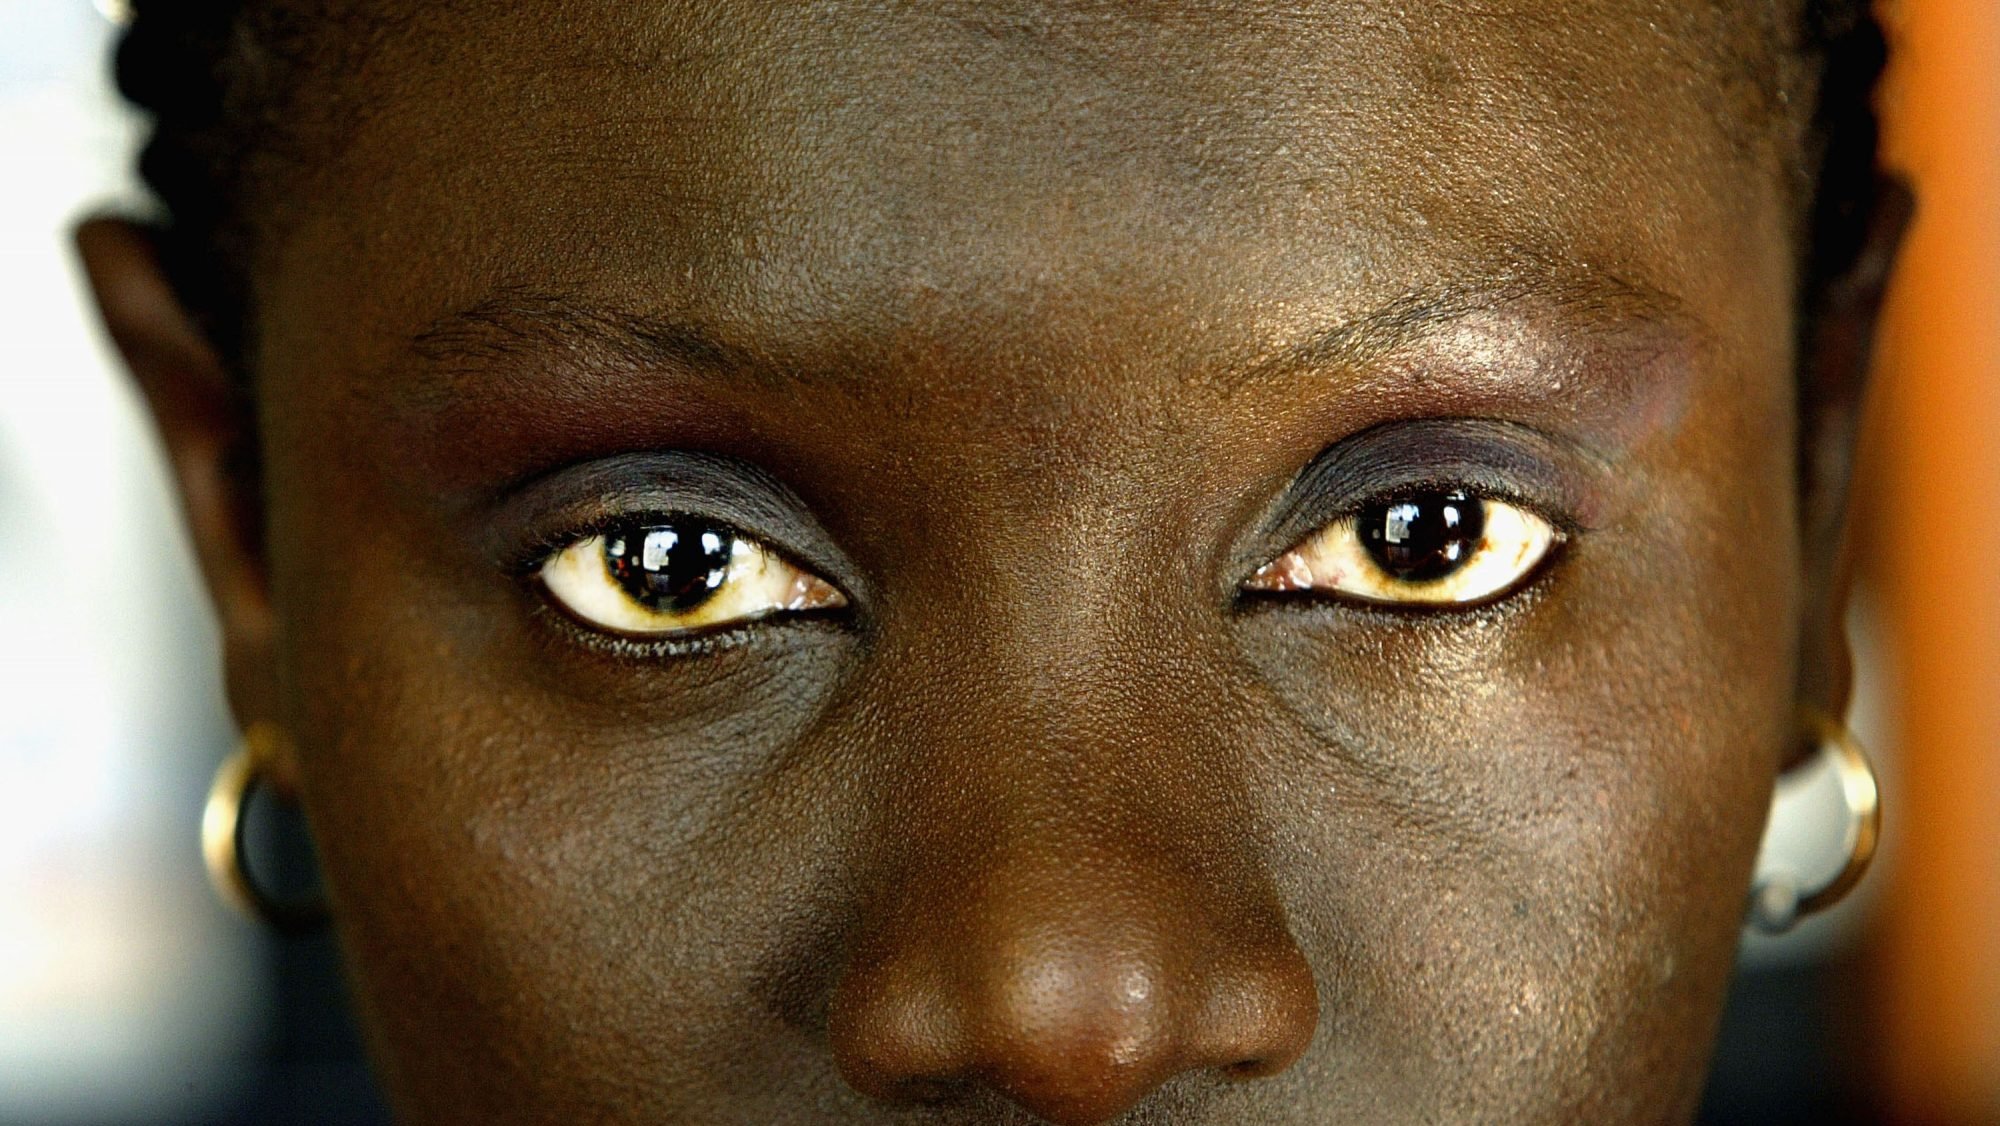 Estima-se que em Portugal vivam 6.500 mulheres excisadas, na maioria originárias da Guiné-Bissau